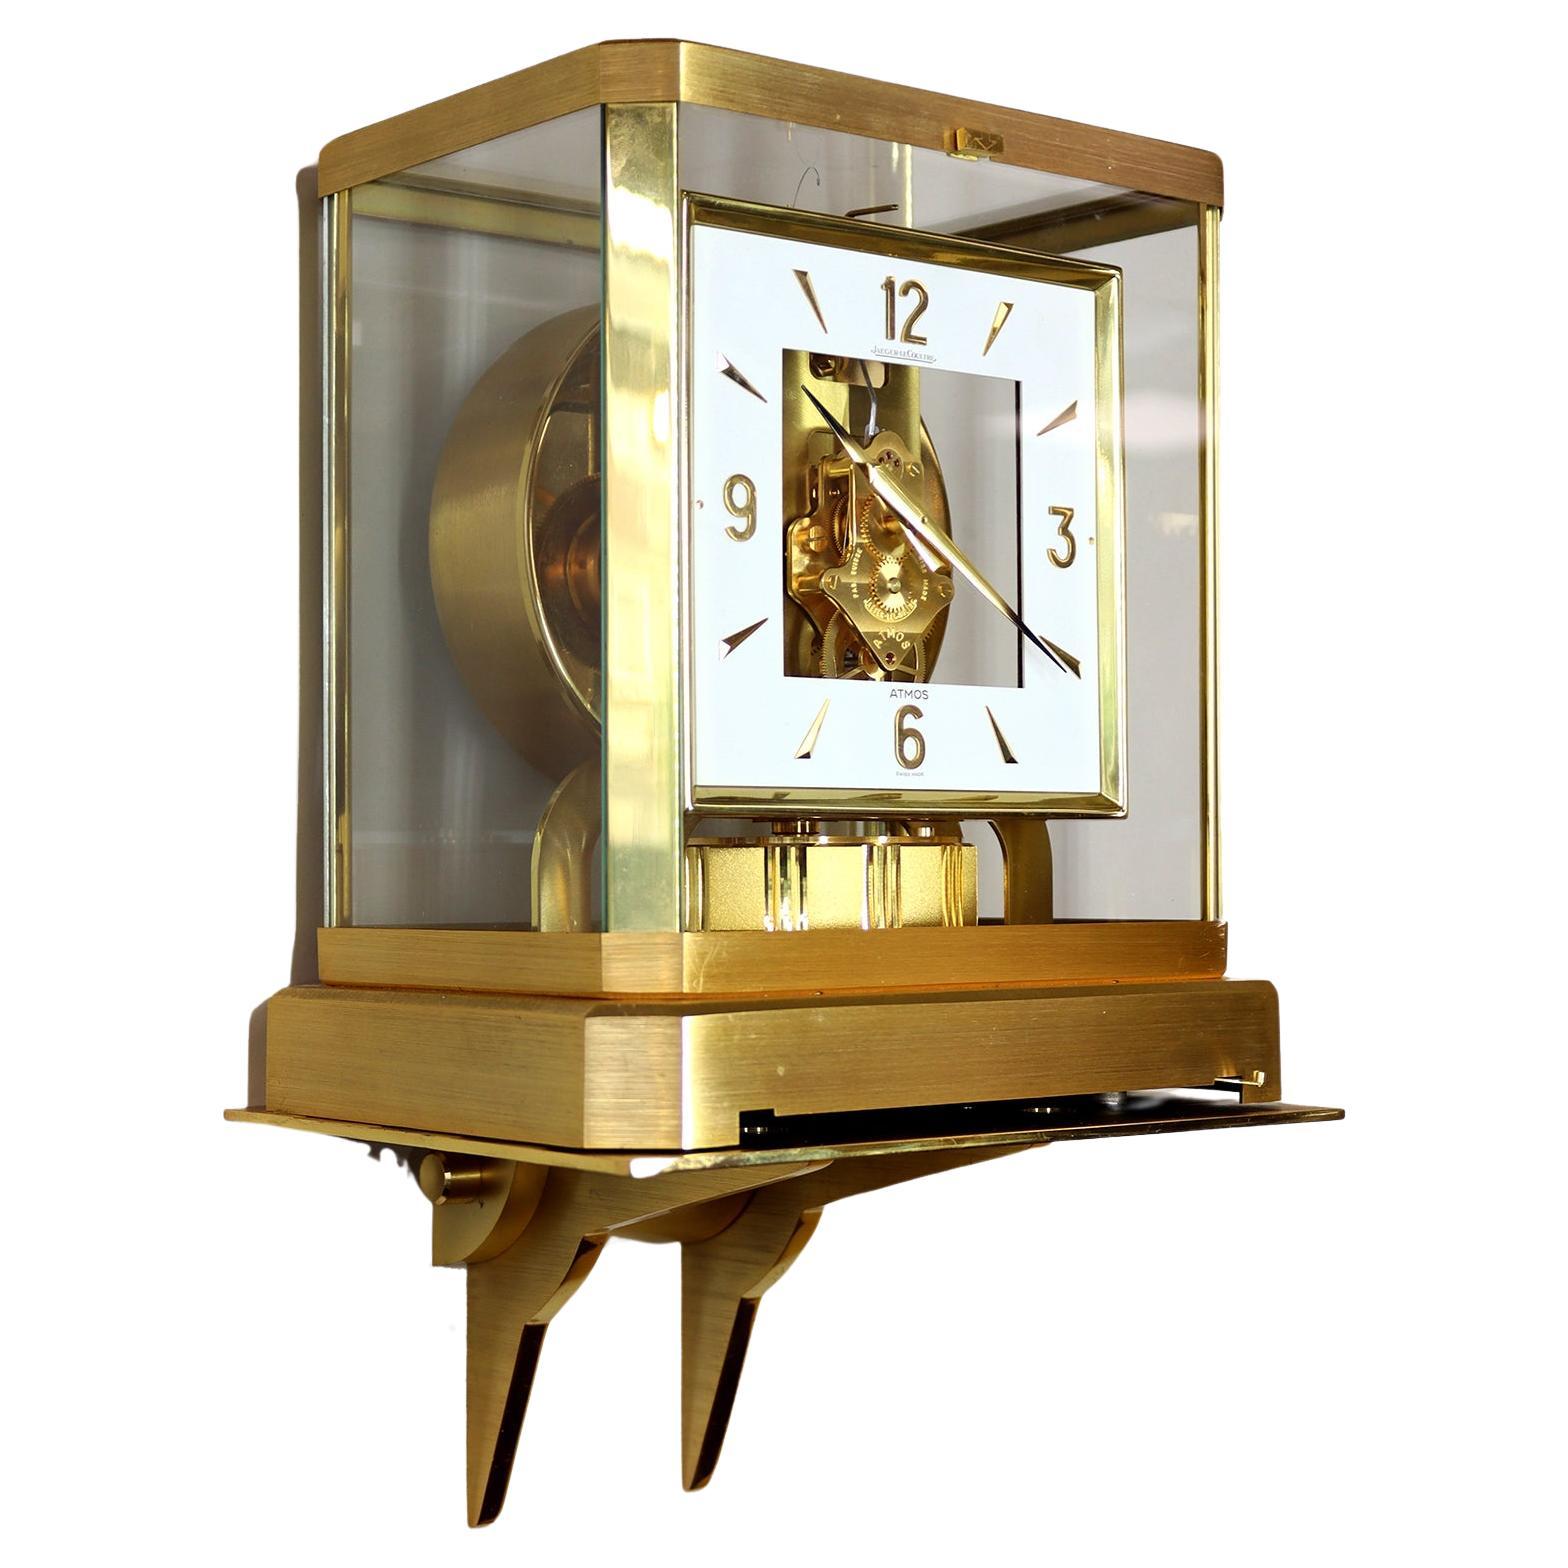 Are Atmos clocks still made?